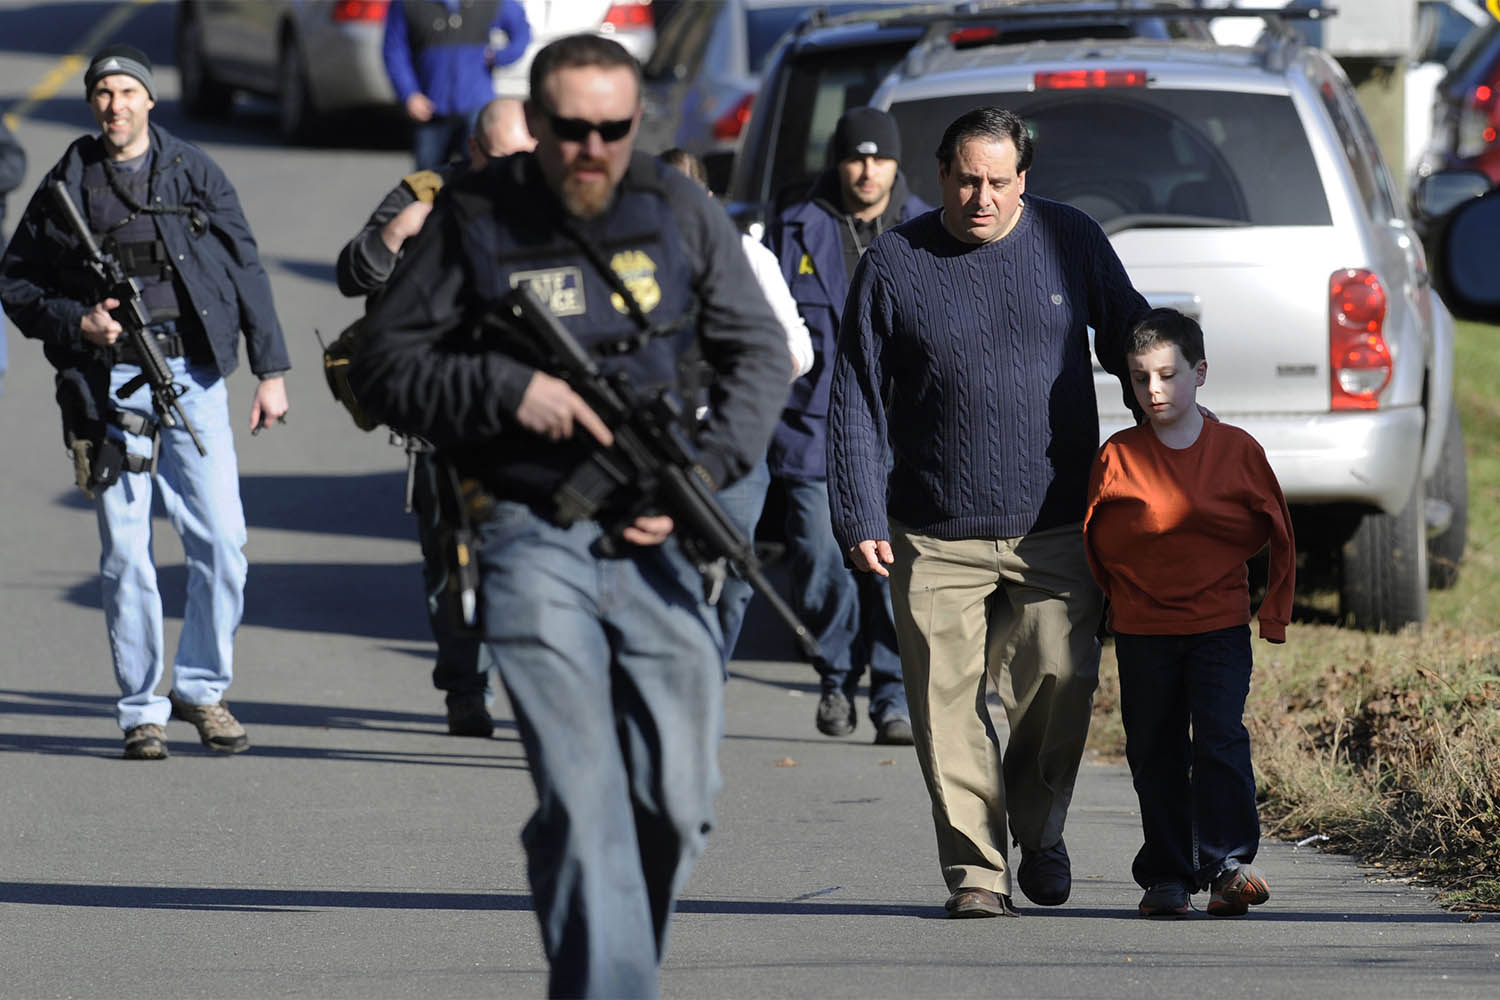 הורים מאבטחים את ילדיהם לאחר ירי בבית הספר היסודי סנדי הוק בניוטאון, קונטיקט. ״לאמריקאים מגיע לשלוח את ילדיהם לבית ספר ללא חשש שייפגעו״ (צילום ארכיון: AP Photo/Jessica Hill)